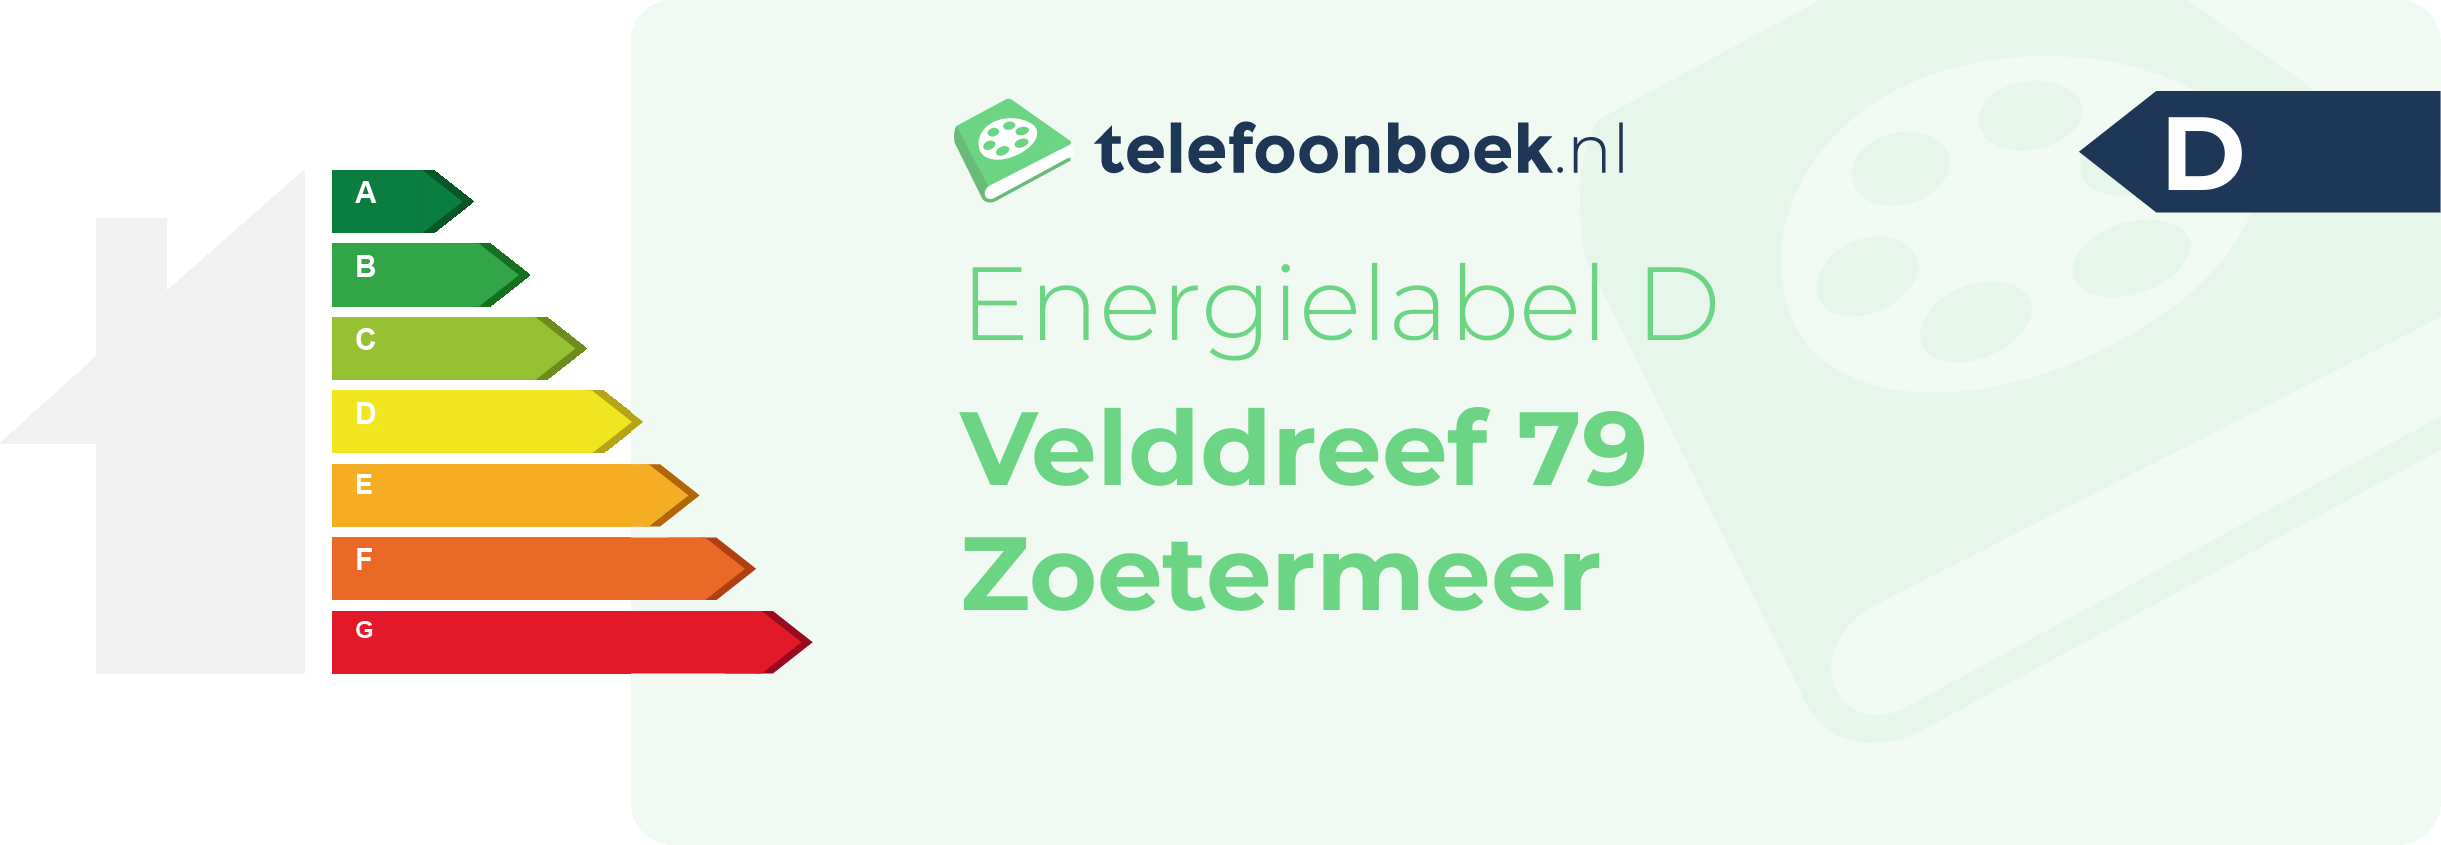 Energielabel Velddreef 79 Zoetermeer